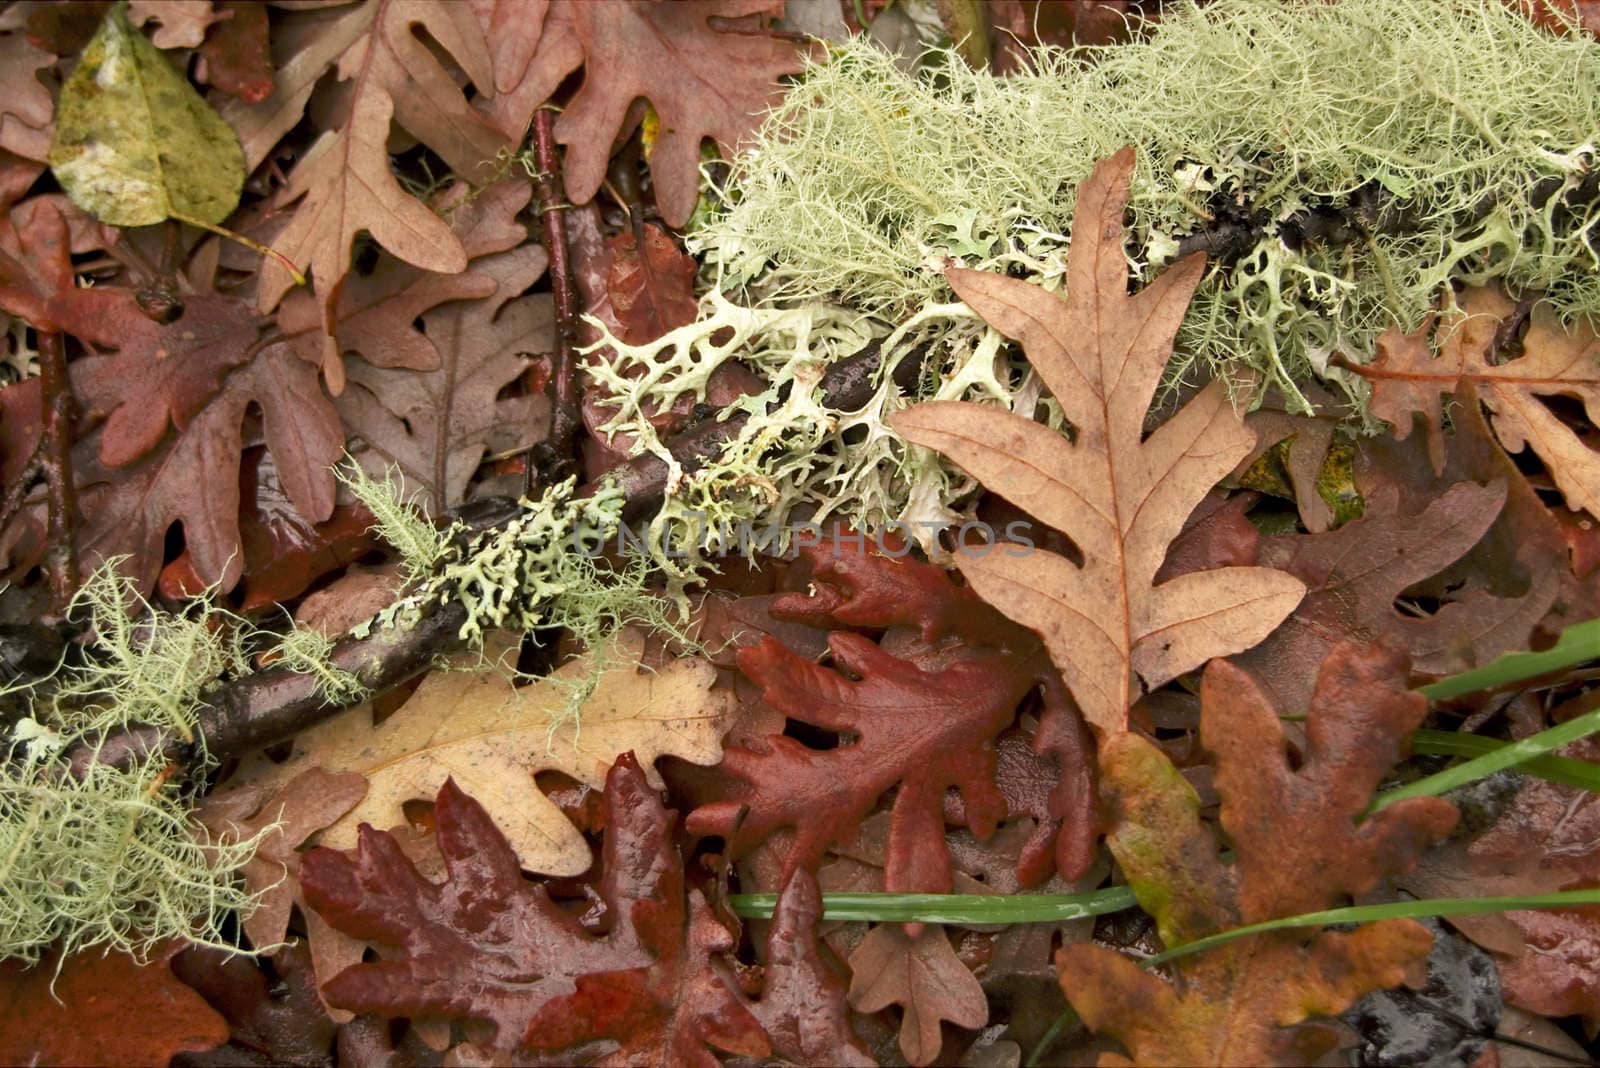 Fallen lichen and autumnn leaves at forest ground